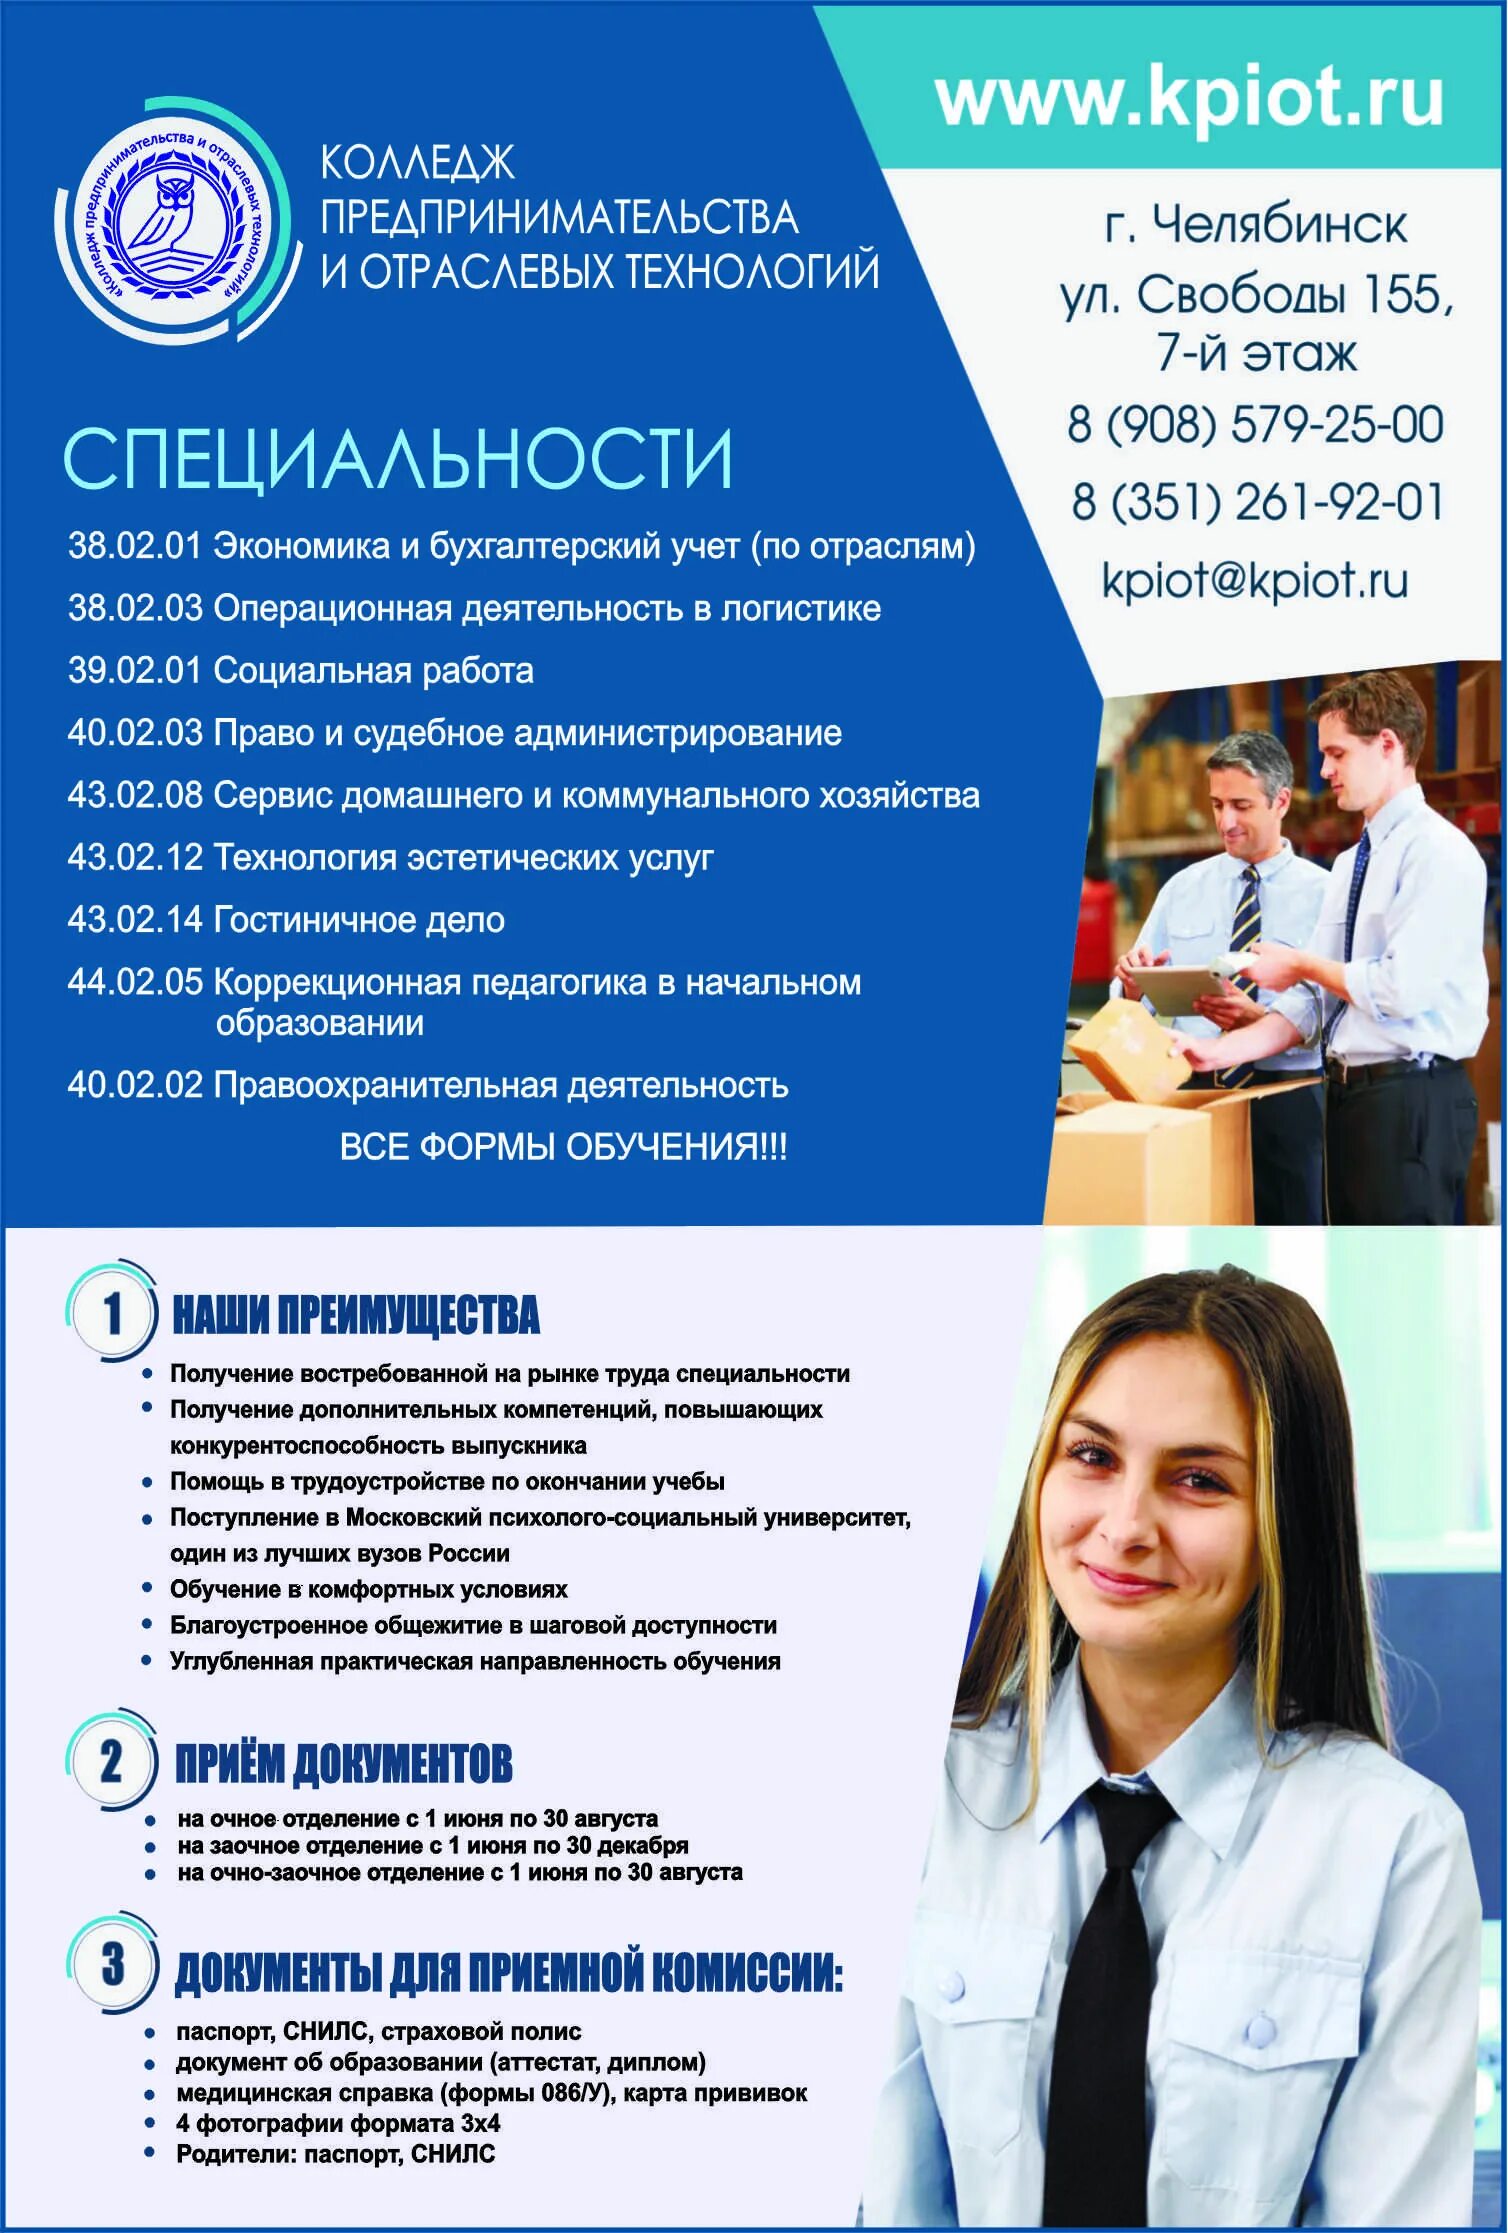 Бюджетный институт в москве после колледжа. Профессии колледжи после 9 класса. Колледж предпринимательства и отраслевых технологий Челябинск. Специальности техникума. Что такое специальность в вузе.